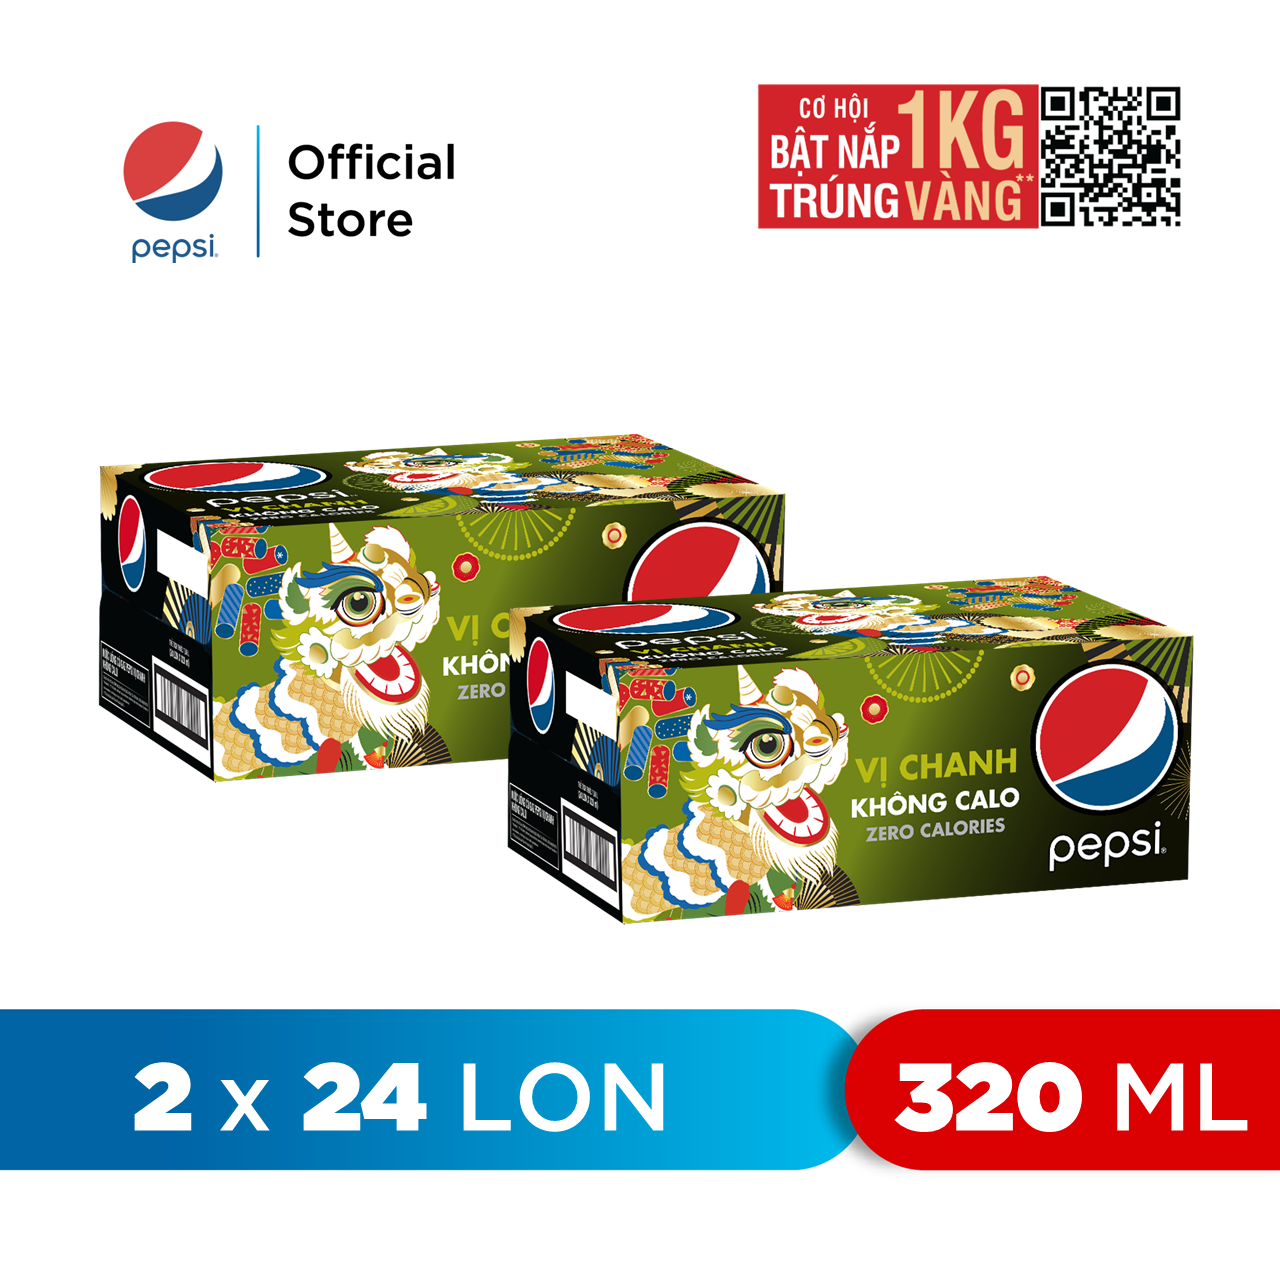 HCM - FREESHIP Combo 2 Thùng 24 Lon Pepsi Vị Chanh Không Calo 320ml lon